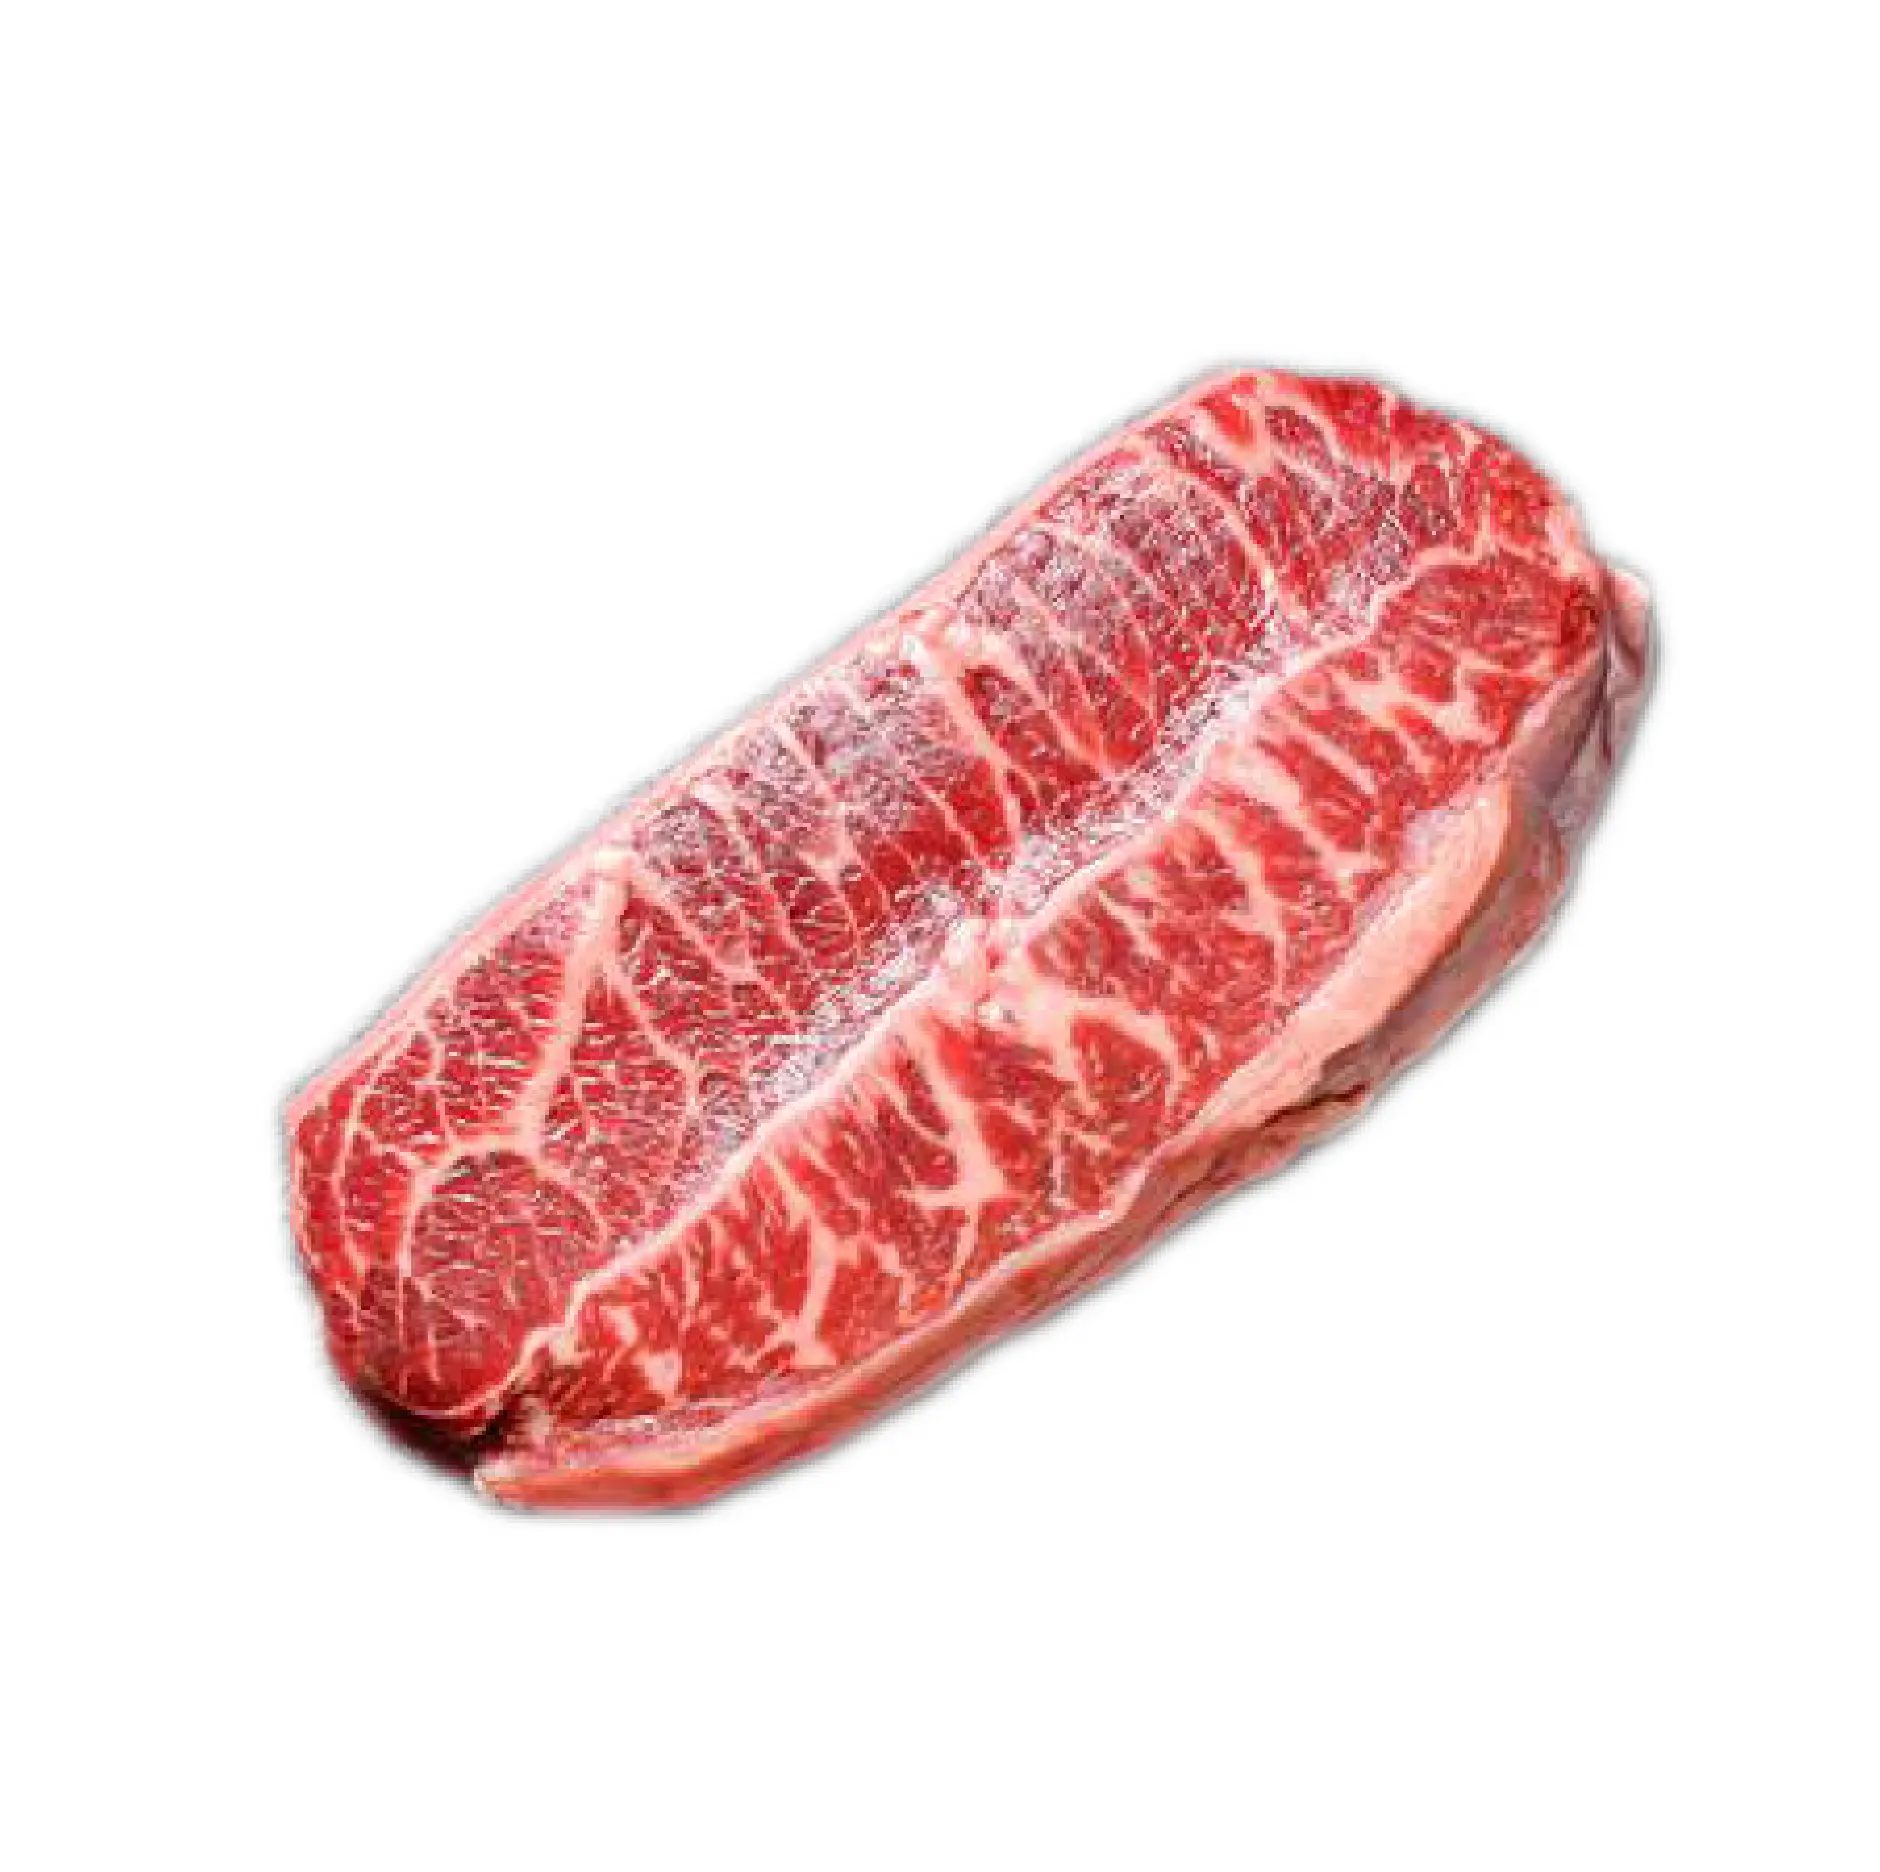 Oyster Blade Steak-1Kg Daging Sapi Halal Beku Tanpa Tulang untuk Ekspor